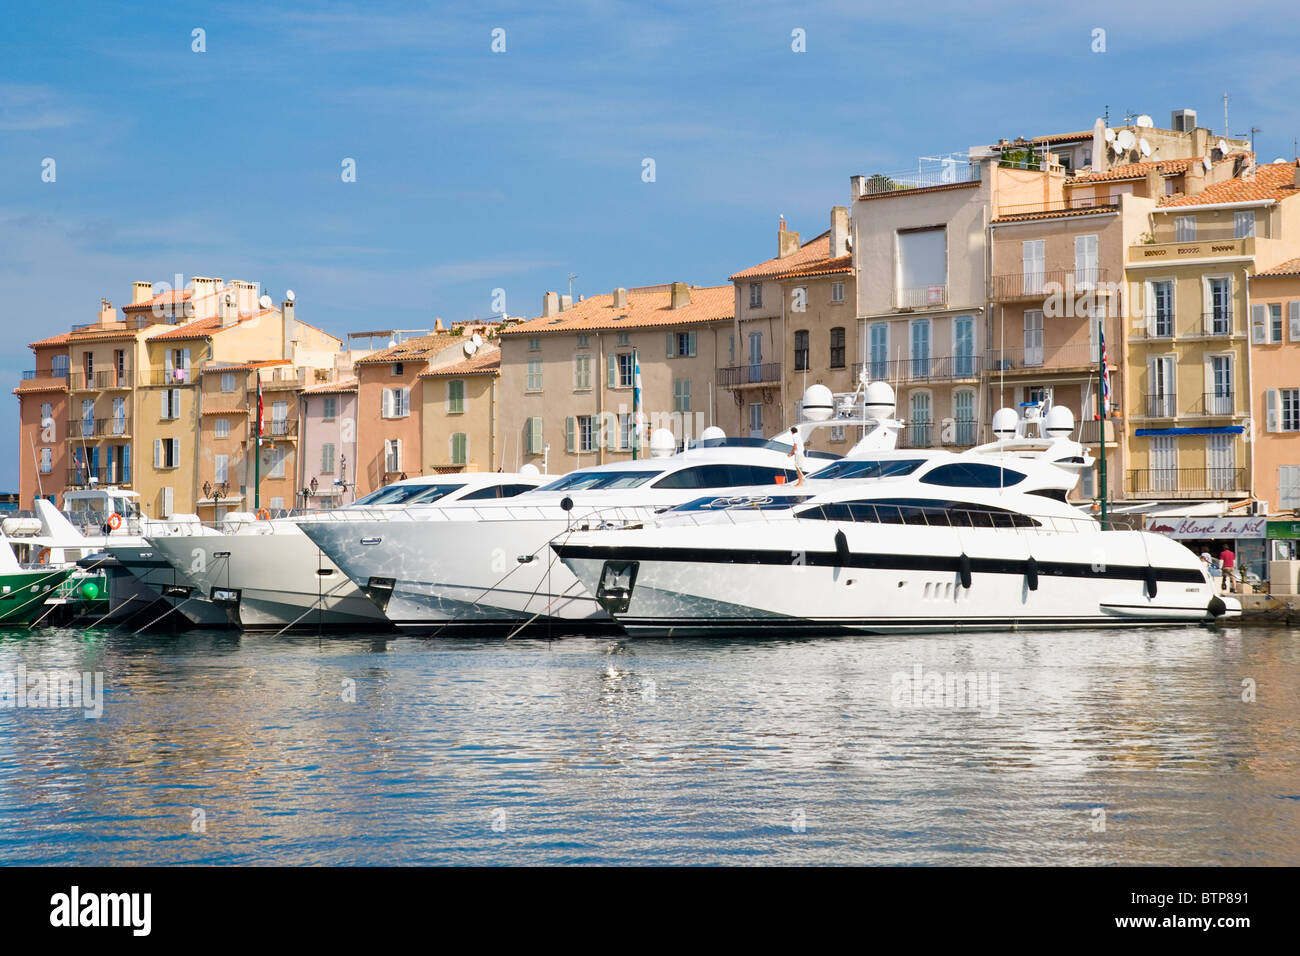 Harbour, St. Tropez, Cote d'Azur, France Stock Photo